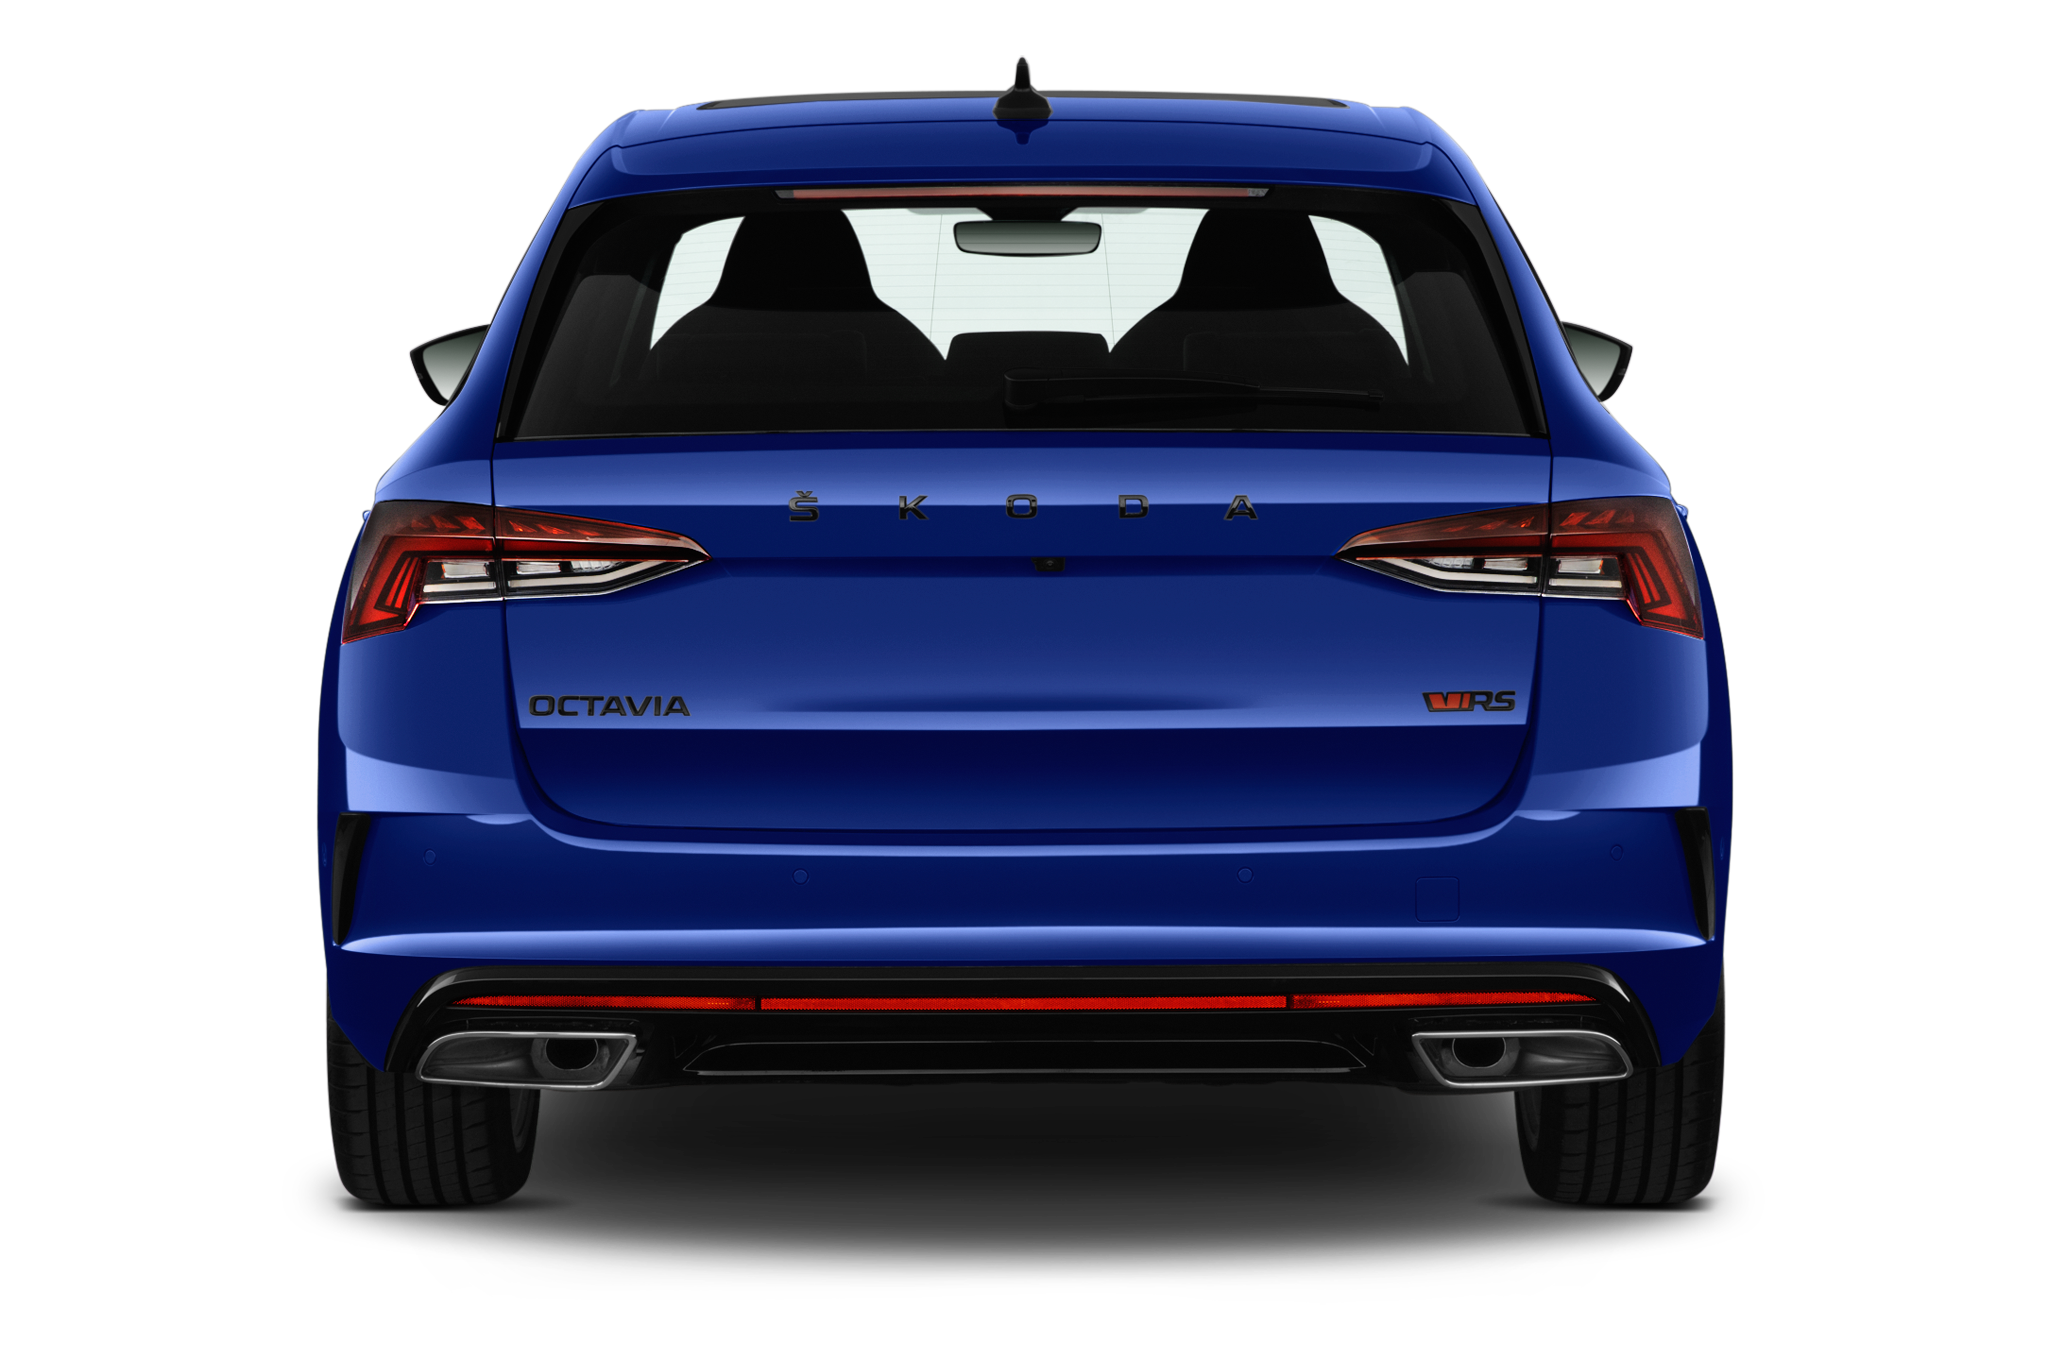 Skoda Octavia Combi (Baujahr 2020) RS 5 Türen Heckansicht